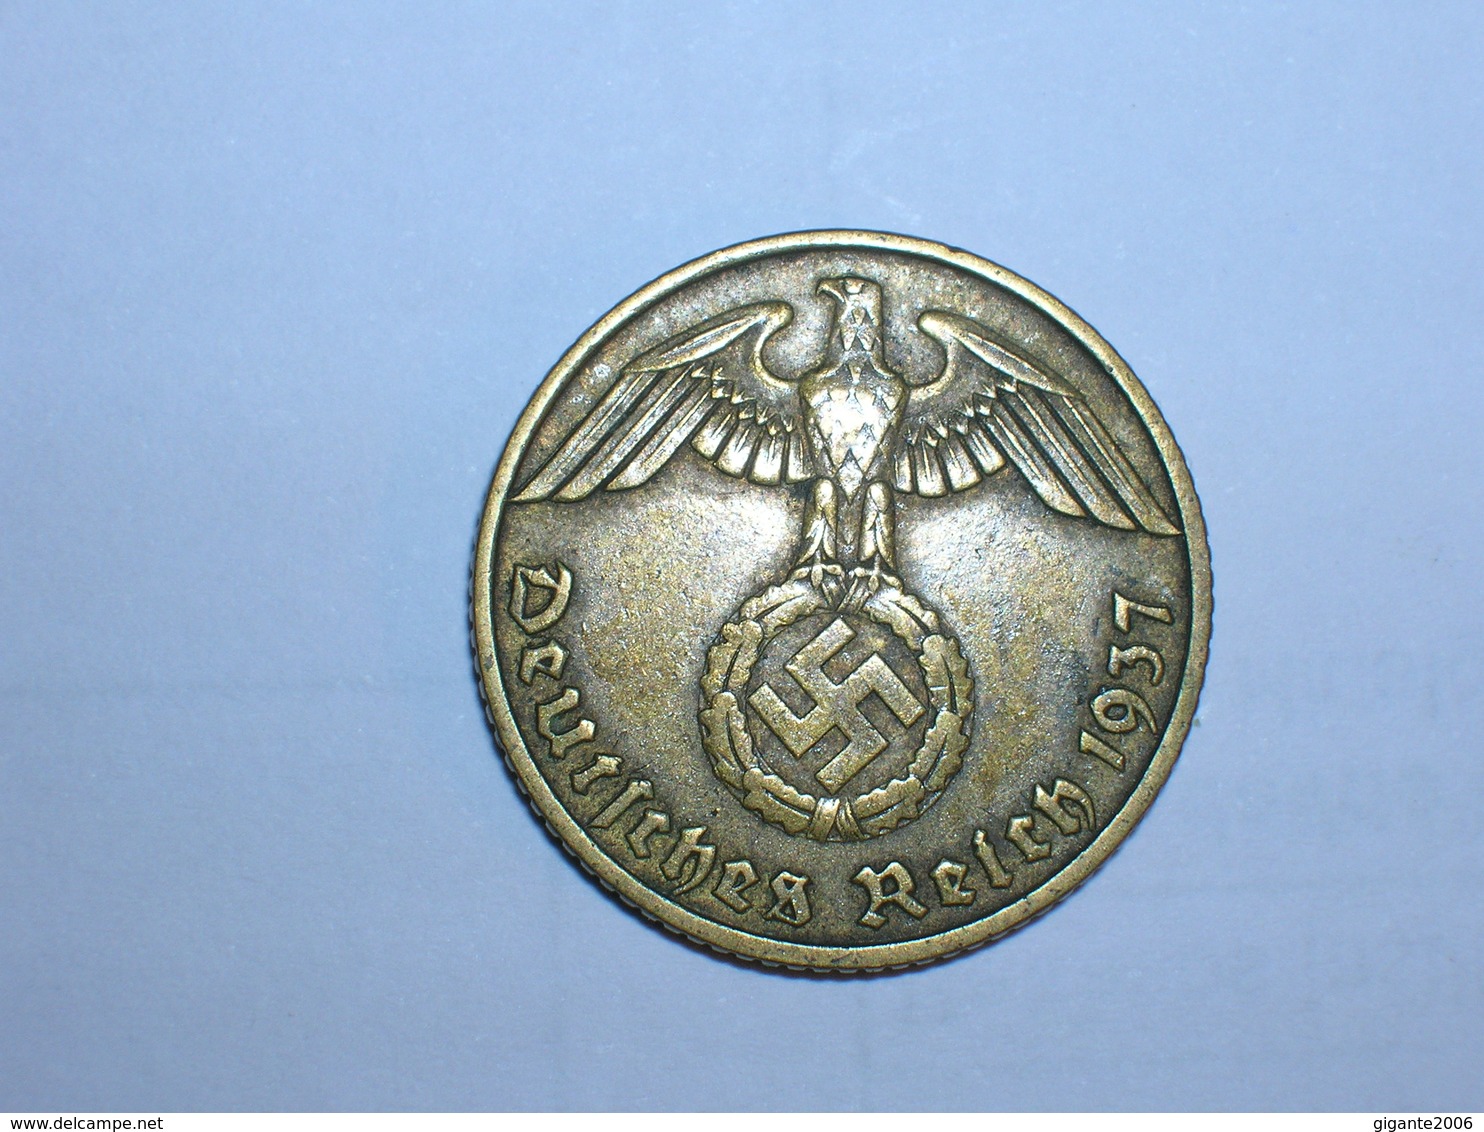 ALEMANIA- 10 PFENNIG 1937 E (913) - 10 Reichspfennig